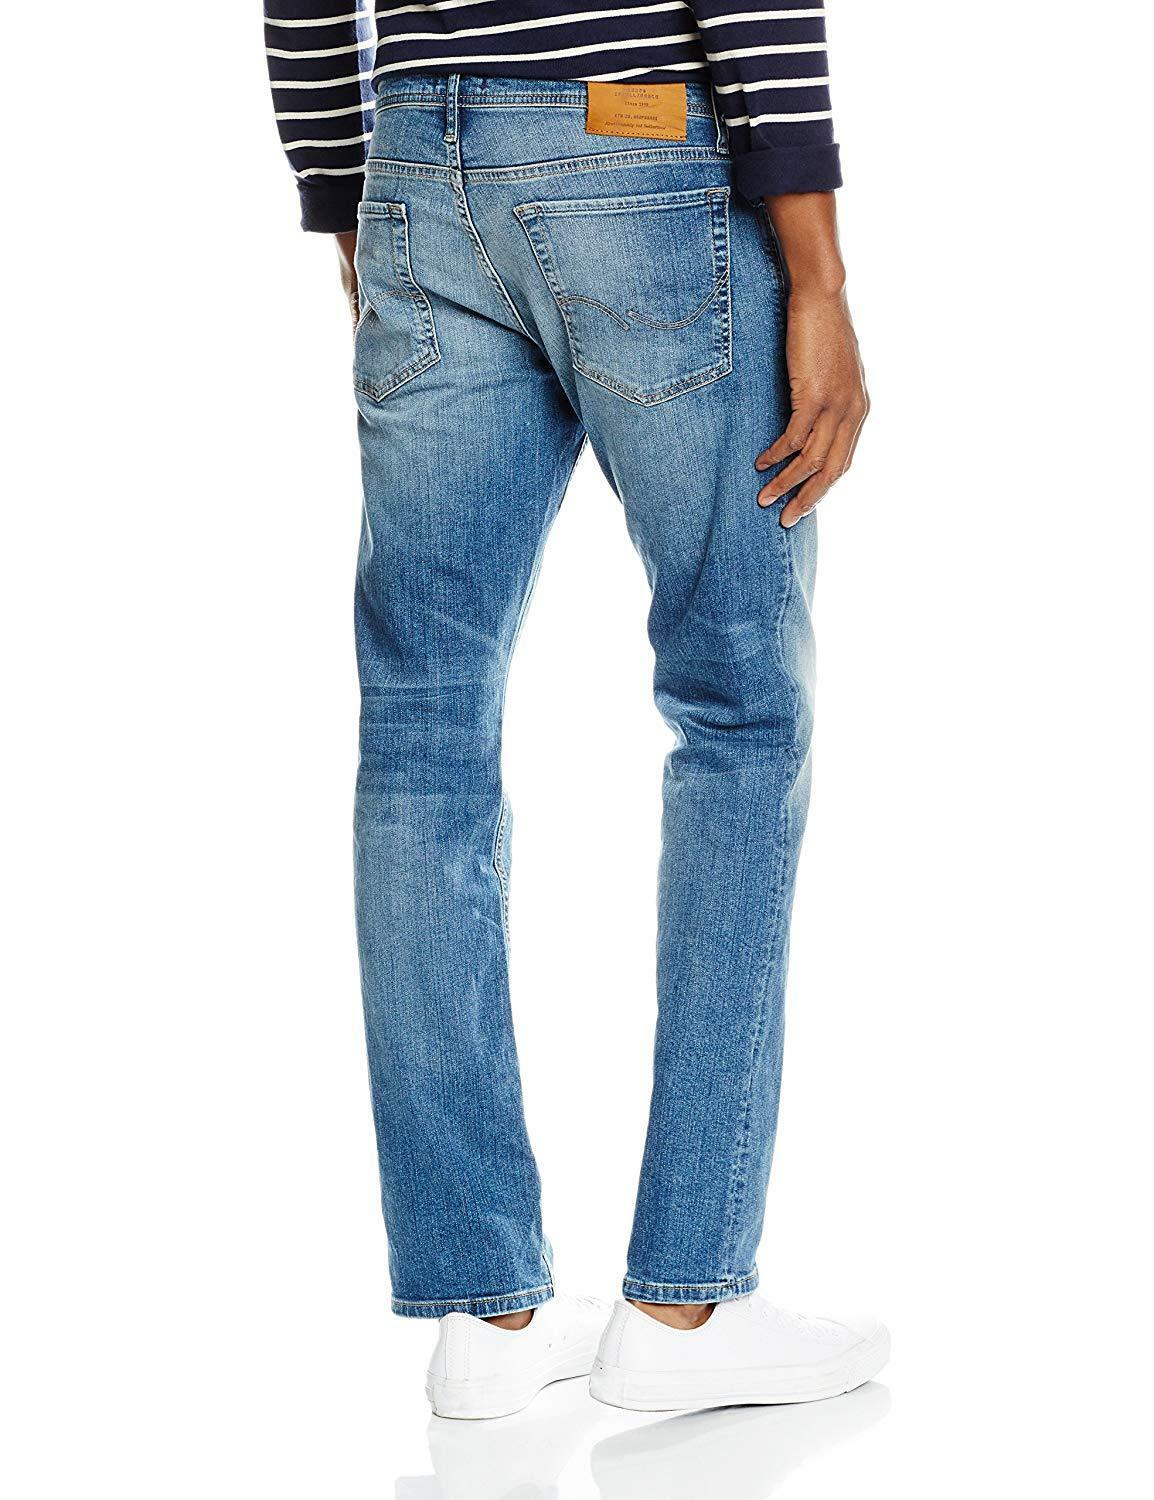 Jack & Jones Denim Jeans For Mens Clark Regular Fit Casual Work Pants ...